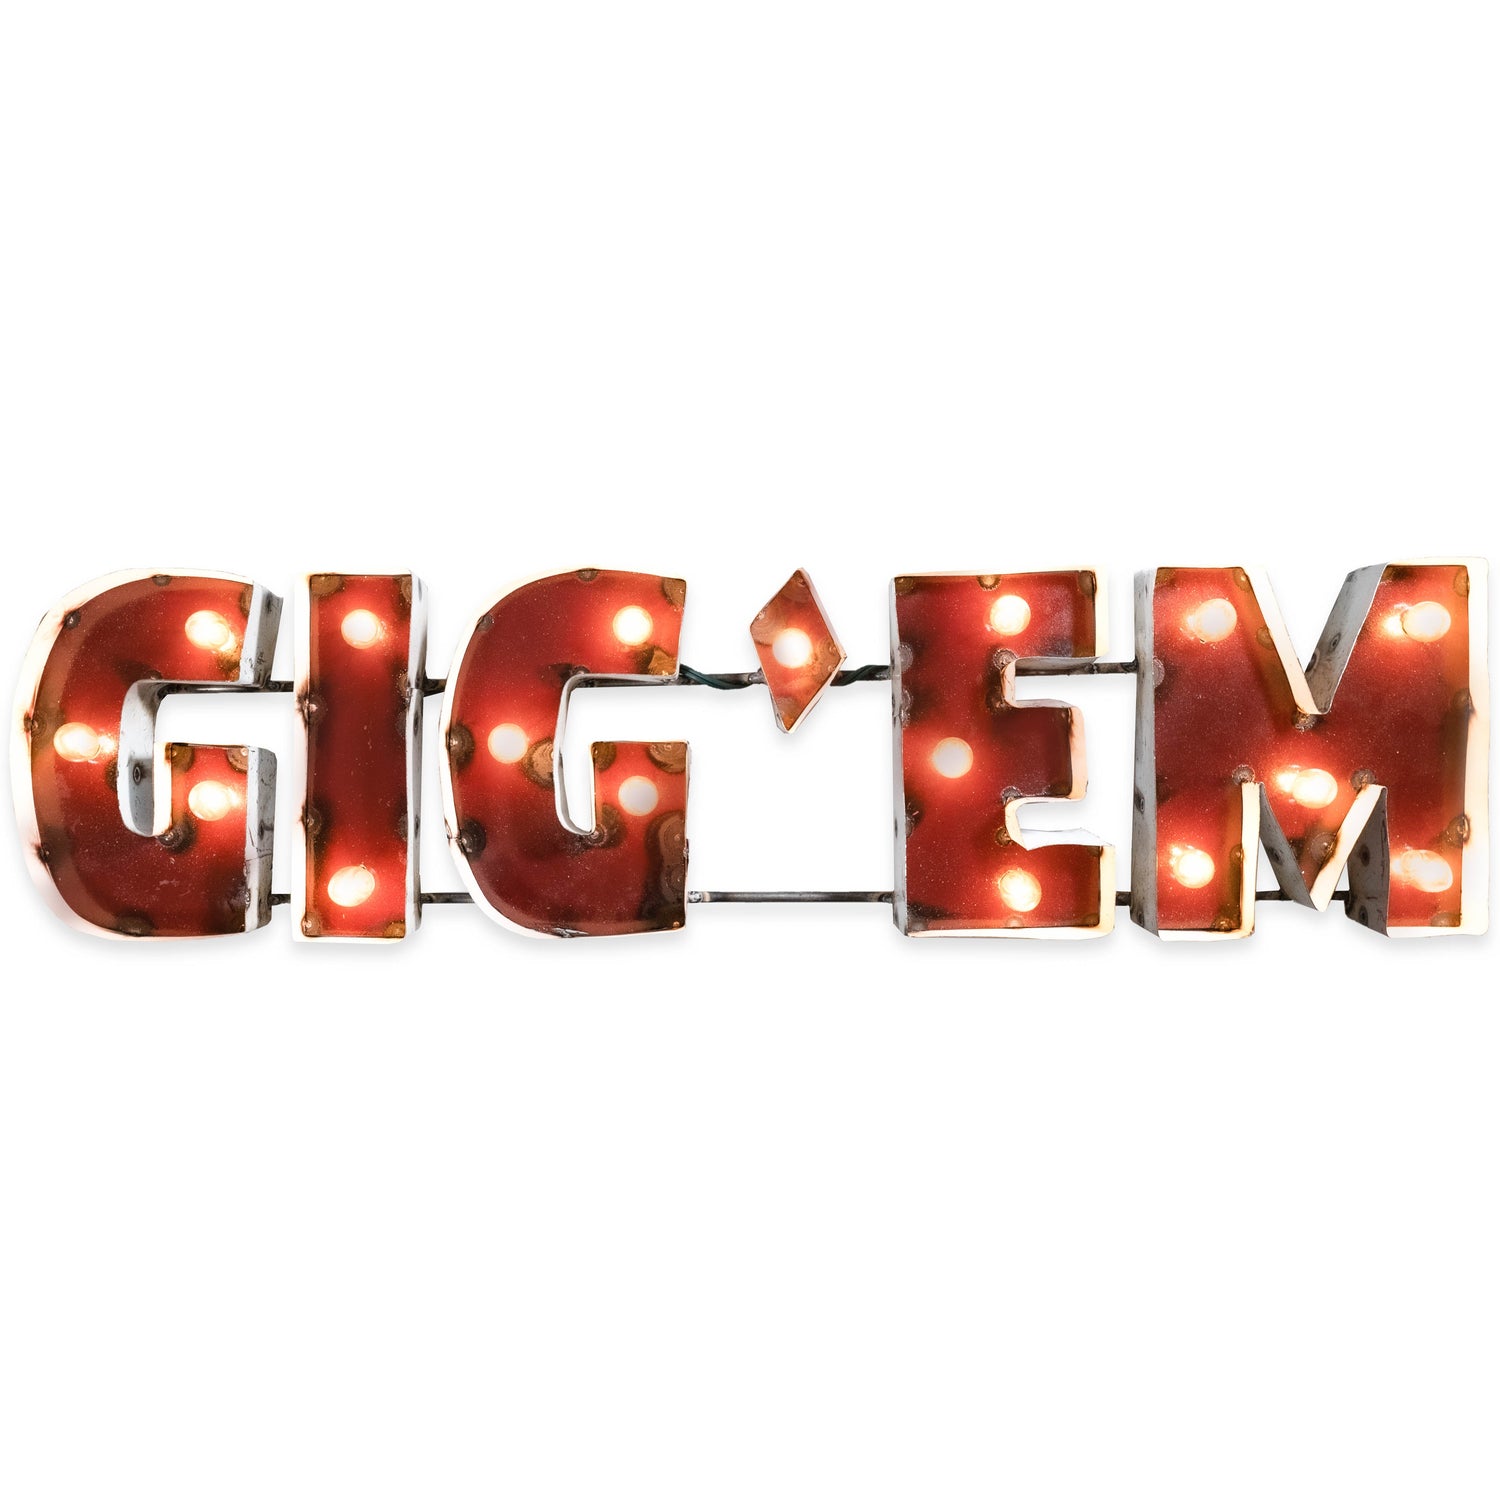 Block Gig 'Em Metal Sign With Lights